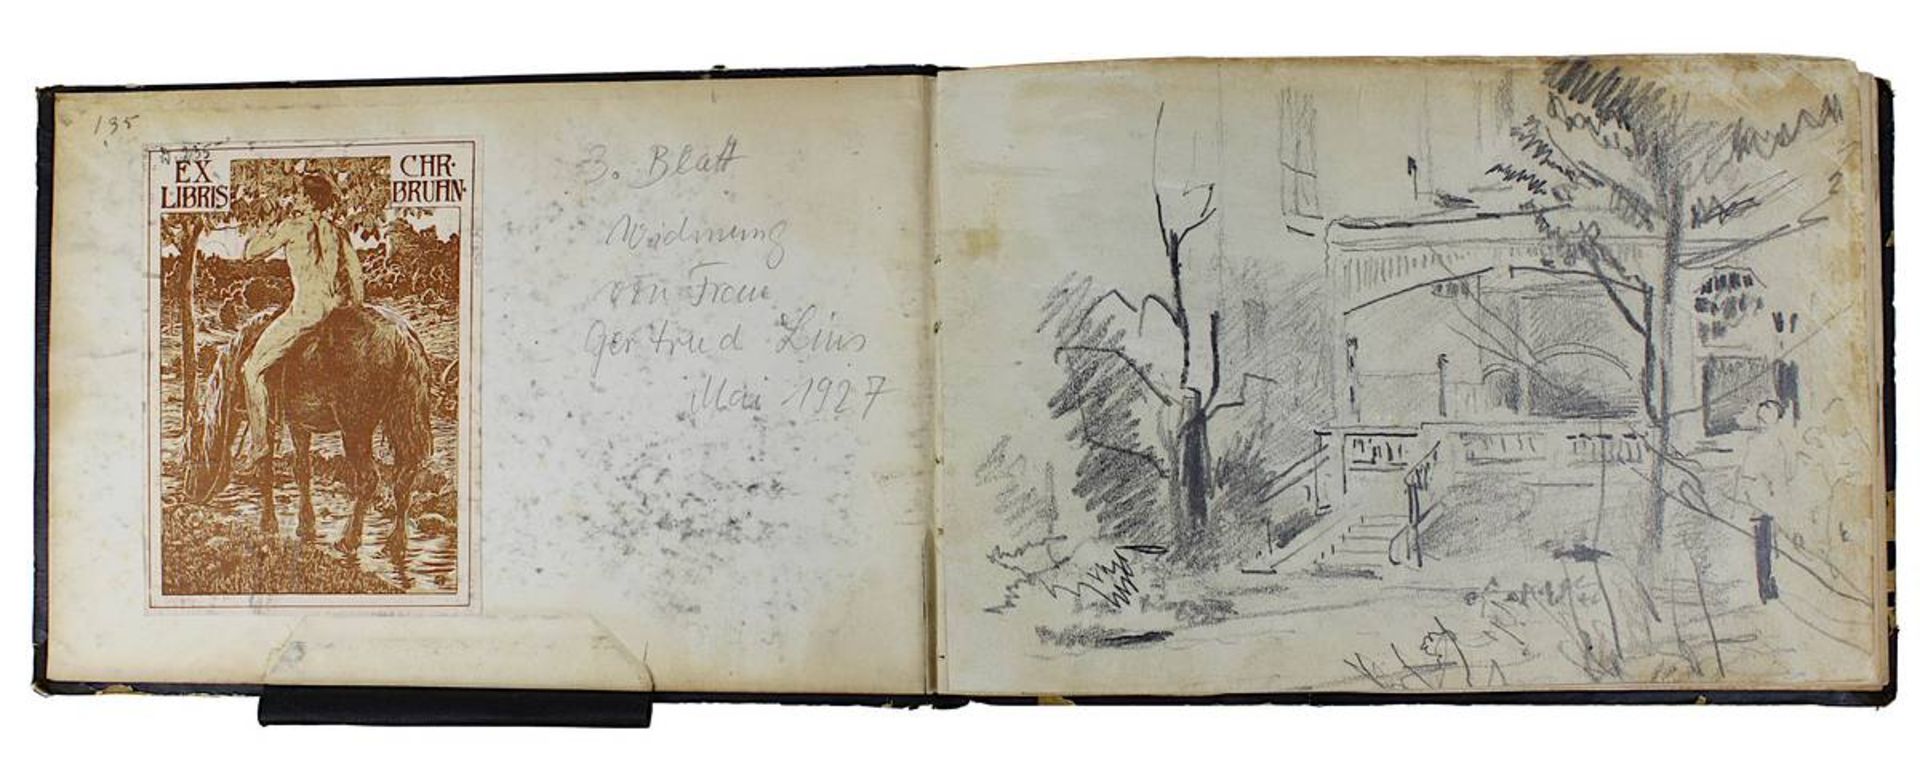 Düsseldorfer Andenkenbuch aus dem Besitz von Christian Nis Nicolaus Bruhn (Segeberg 1868 - 1942